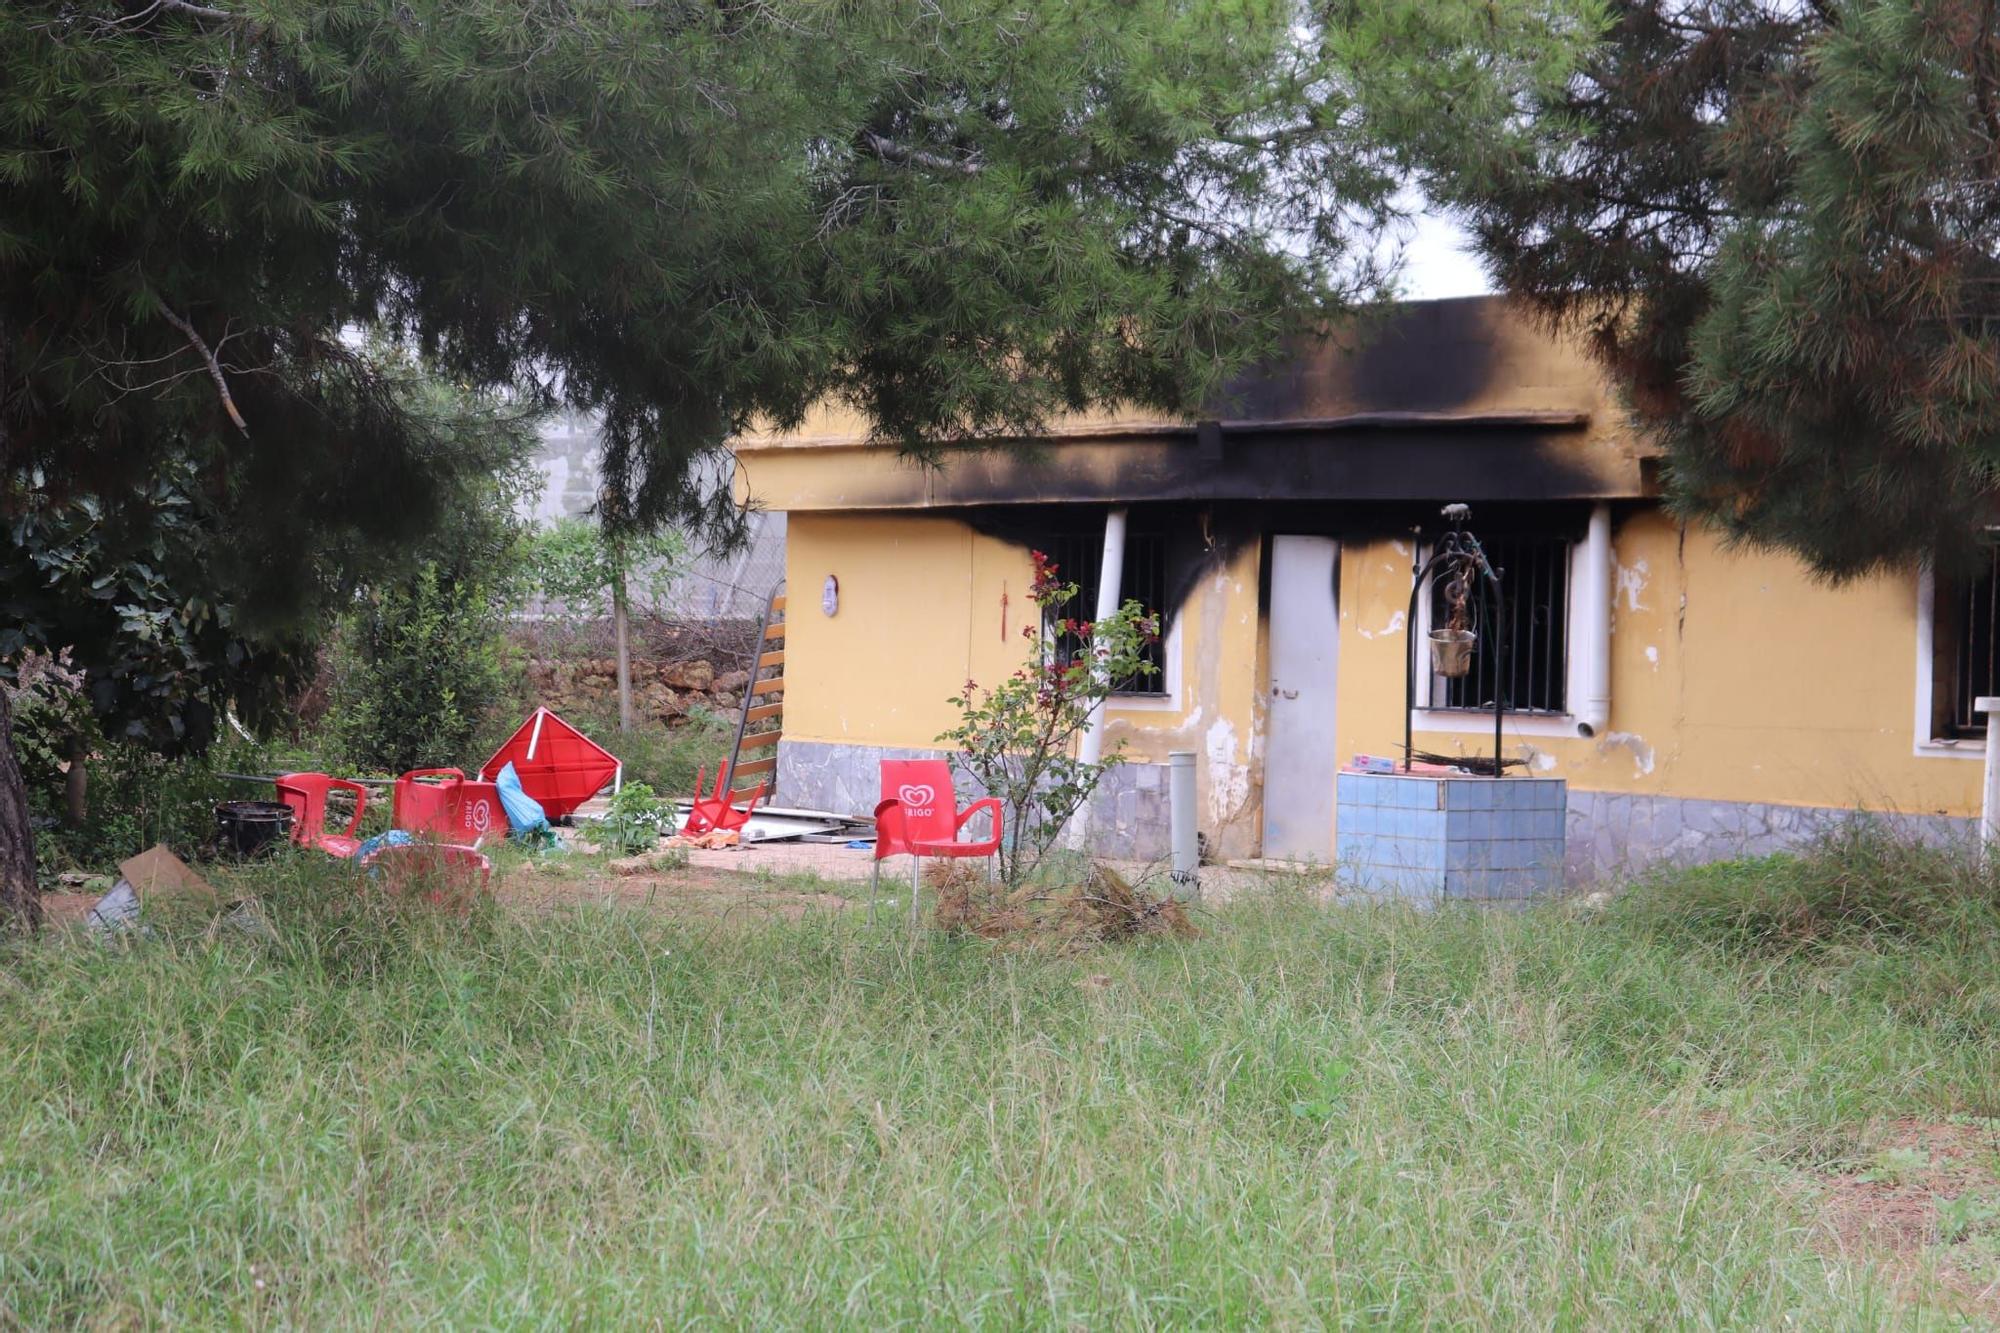 Un hombre muere en un incendio de una caseta 'okupada' en Torrent